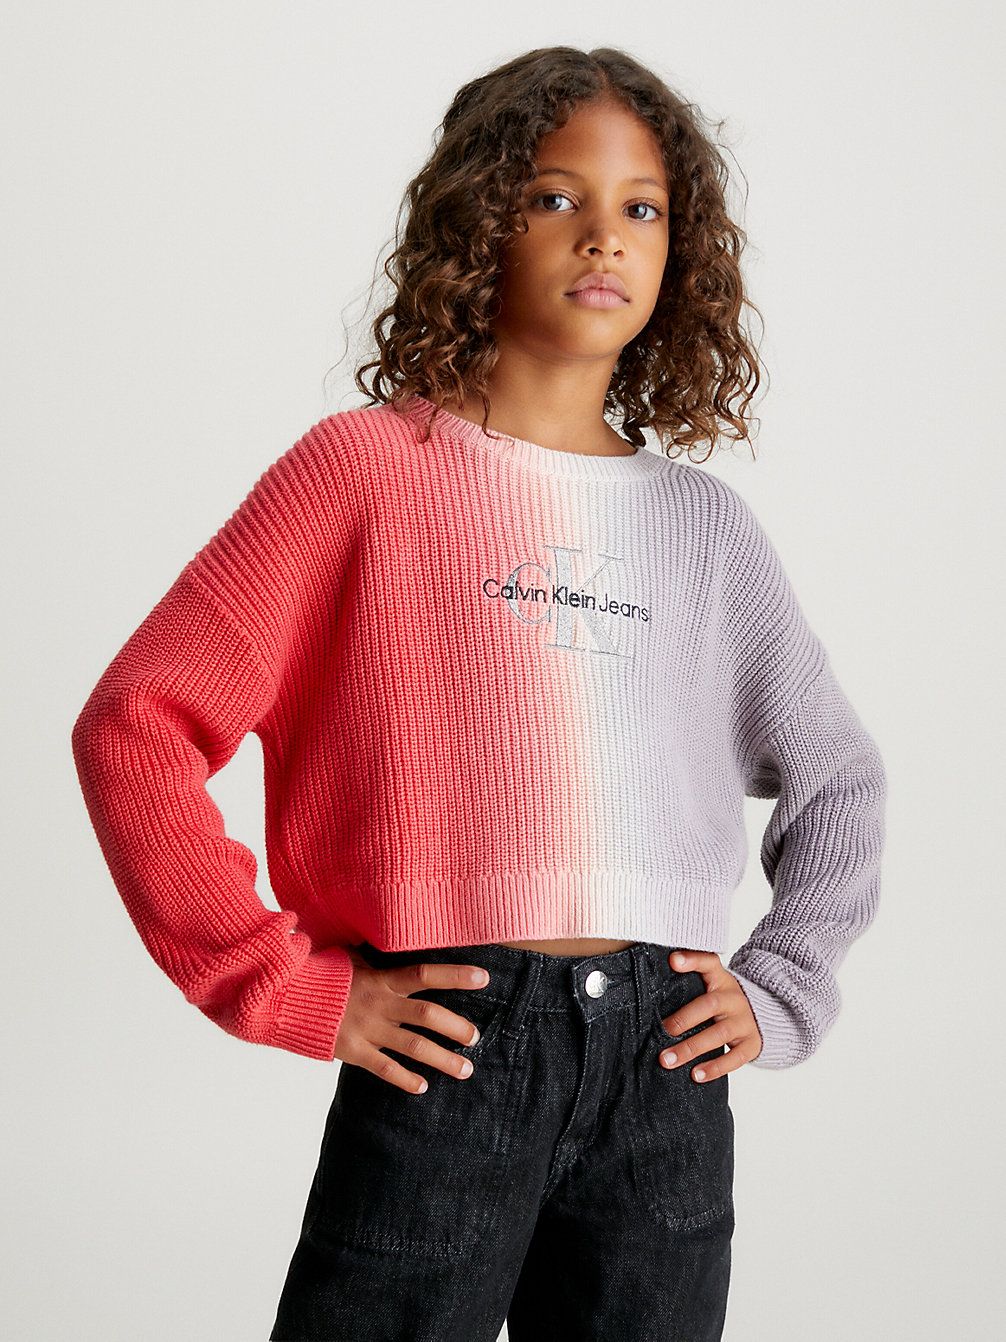 AUBURN Pullover Mit Farbverlauf undefined Maedchen Calvin Klein